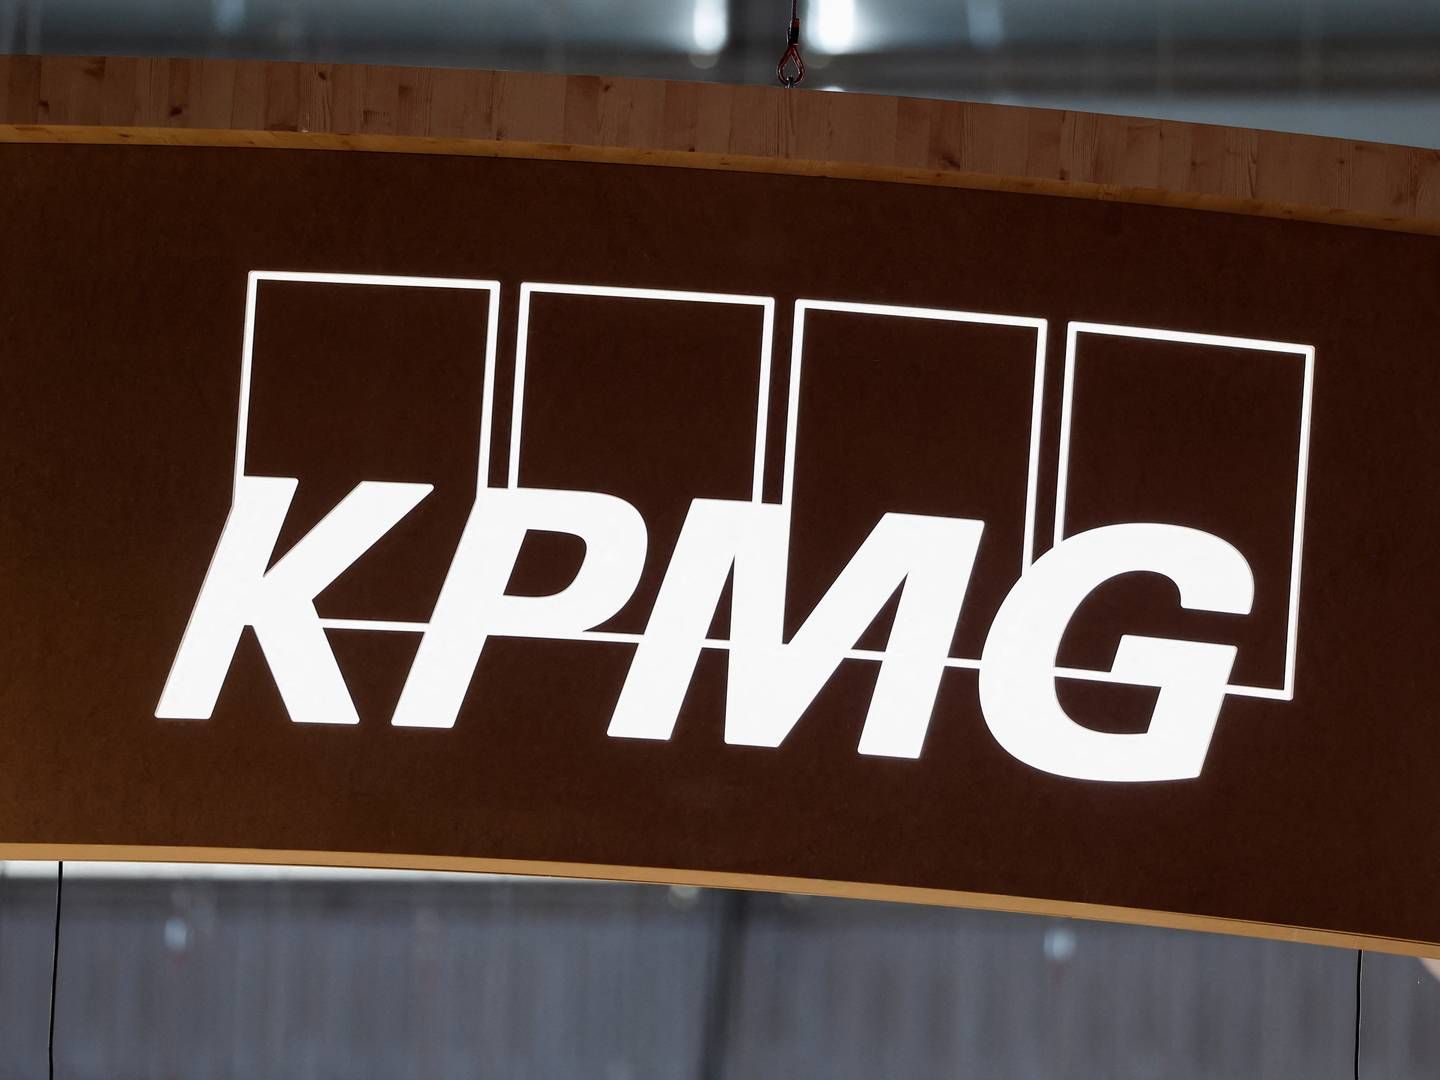 KPMG Law Advokatfirma får bøde på 10.000 kr. for at have brudt reglerne for god advokatskik. | Foto: BENOIT TESSIER/REUTERS / X07241